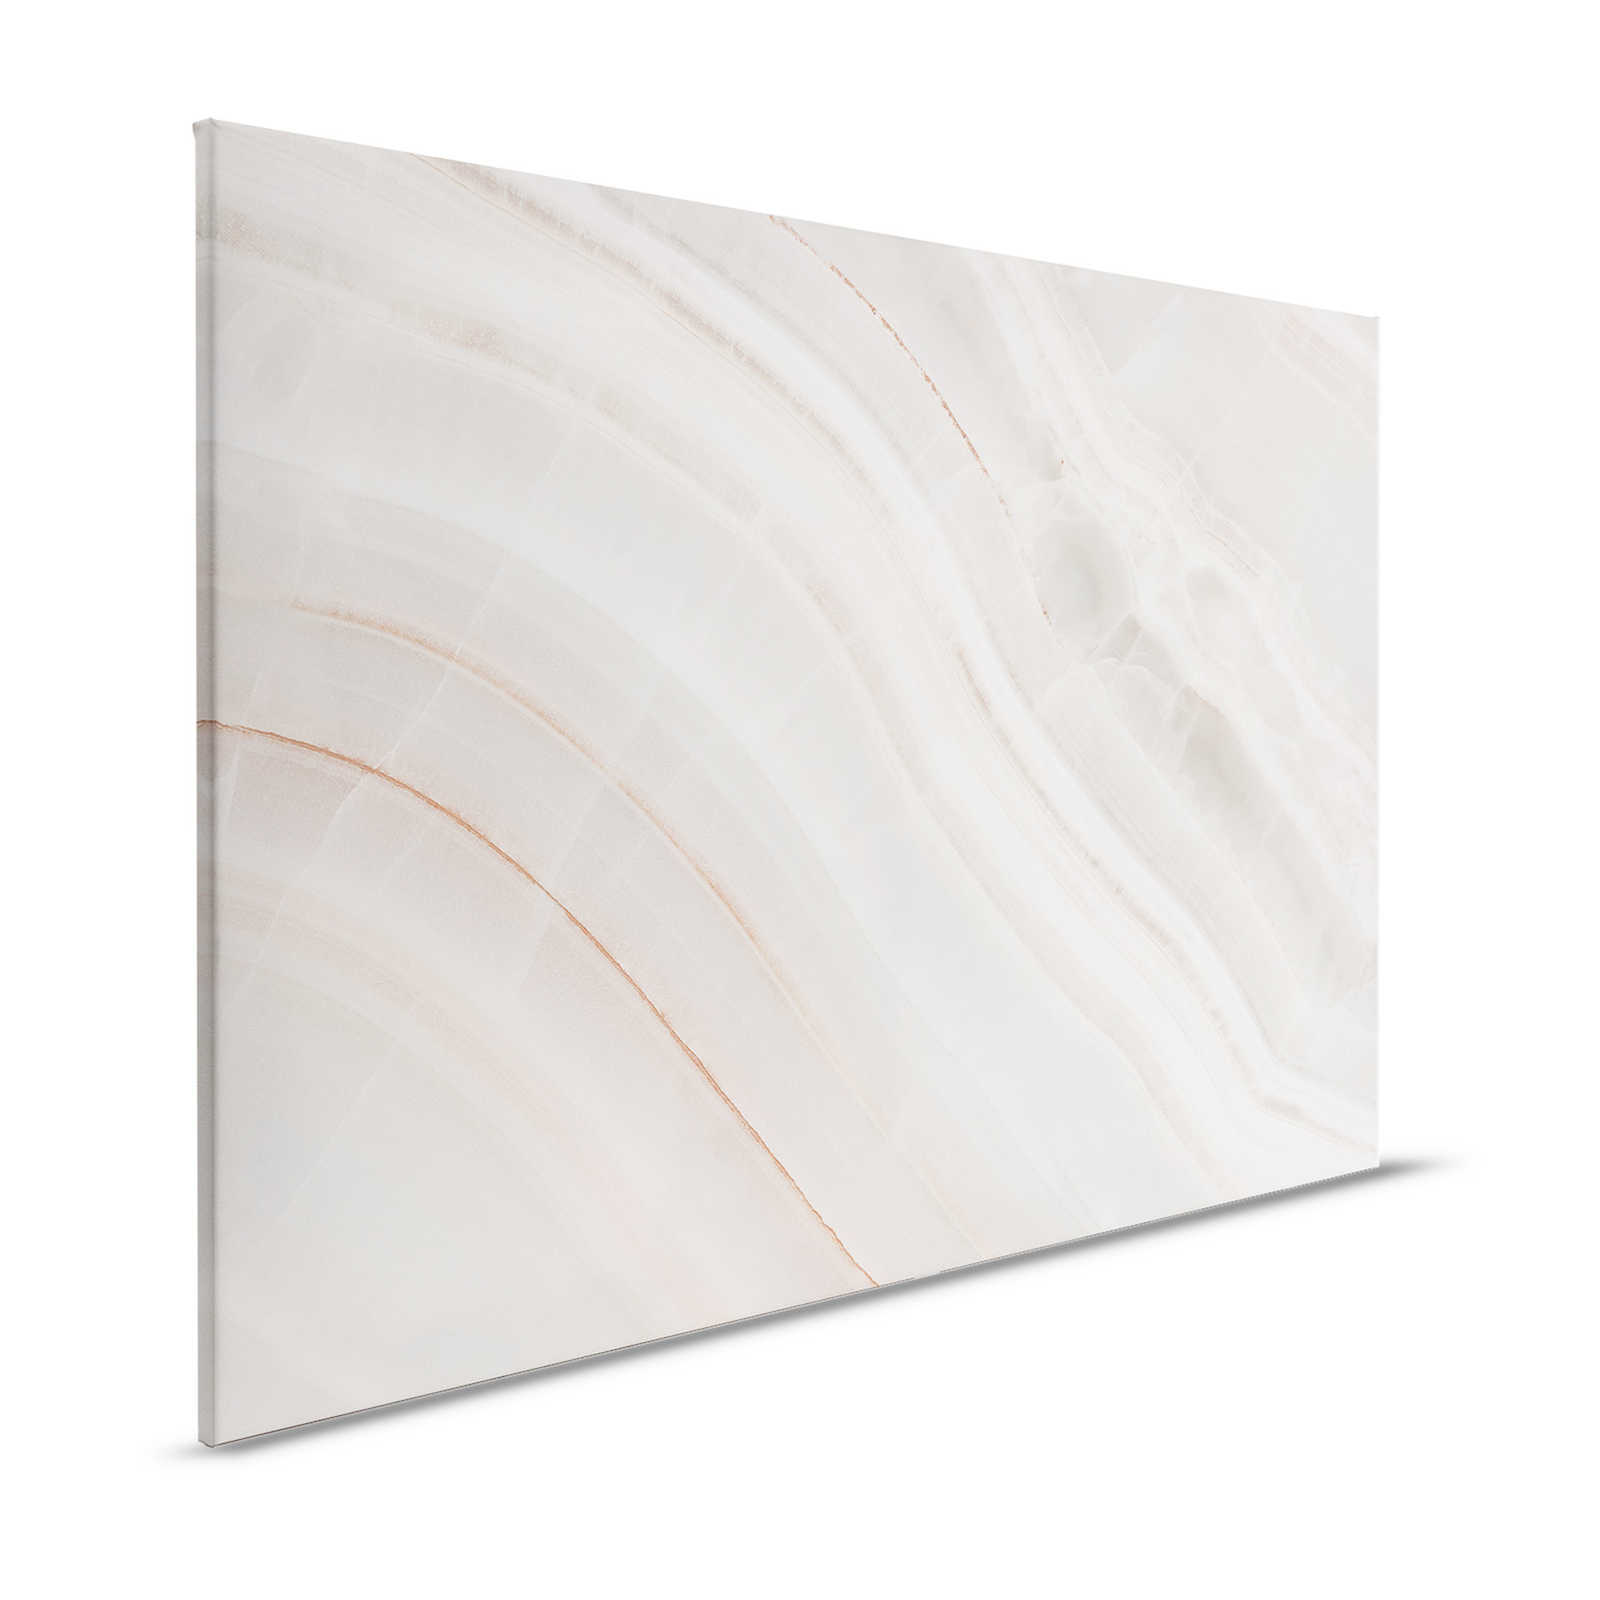 Marmor Leinwandbild mit marmorierter Steinplatte – 1,20 m x 0,80 m
